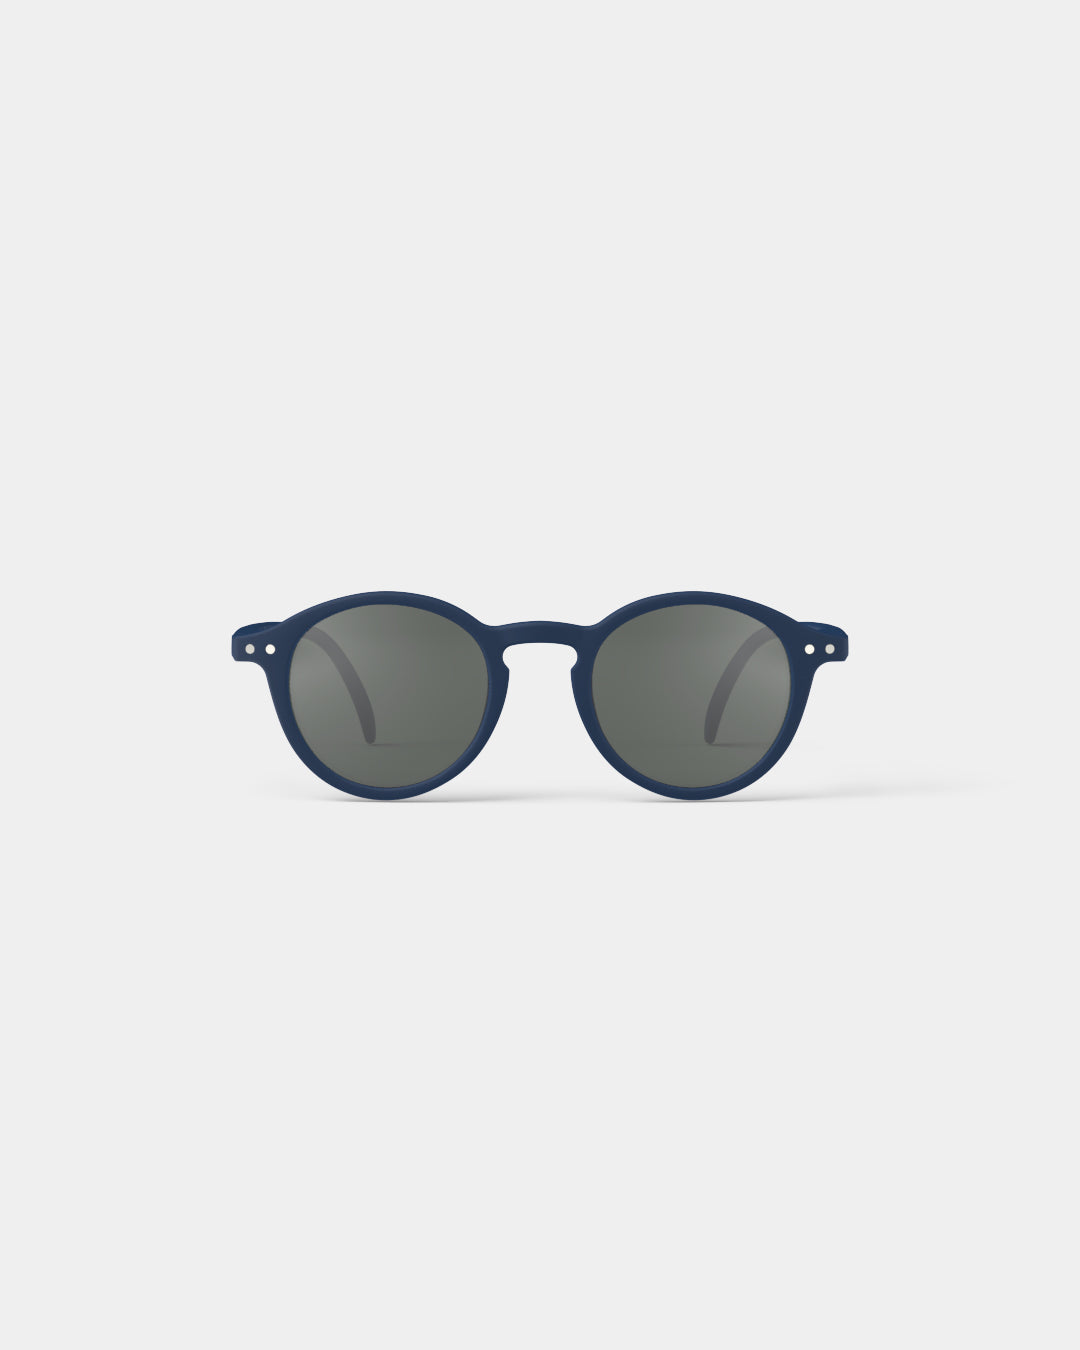 Junior Sunglasses - Style D - Colour Navy Blue